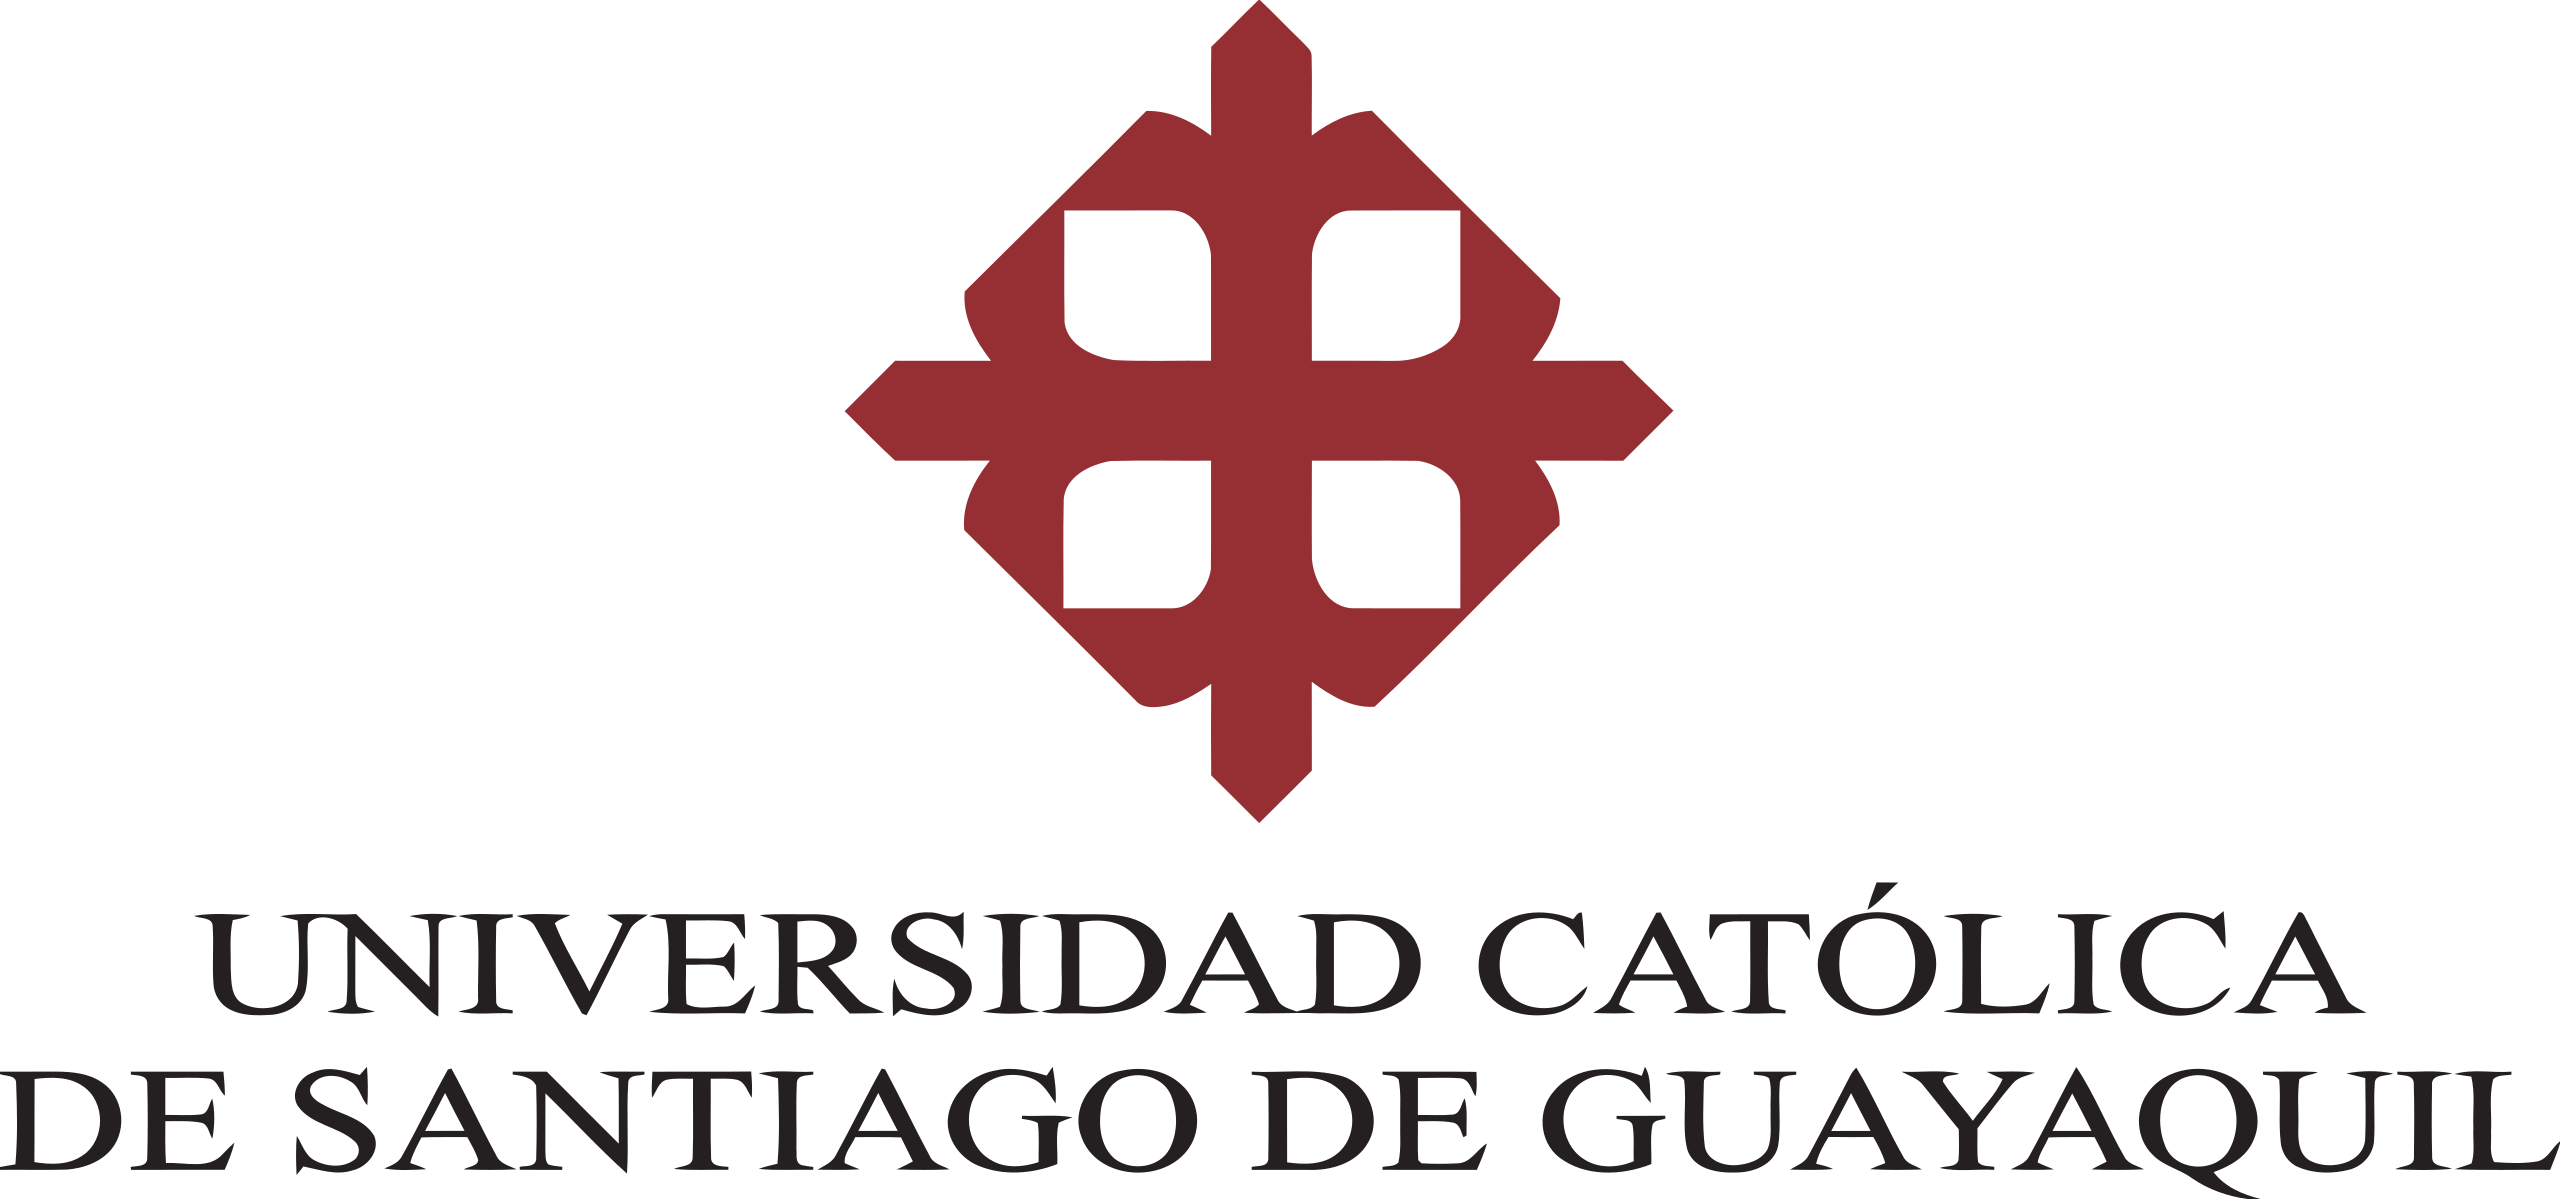 logo Universidad Católica de Santiago de Guayaquil